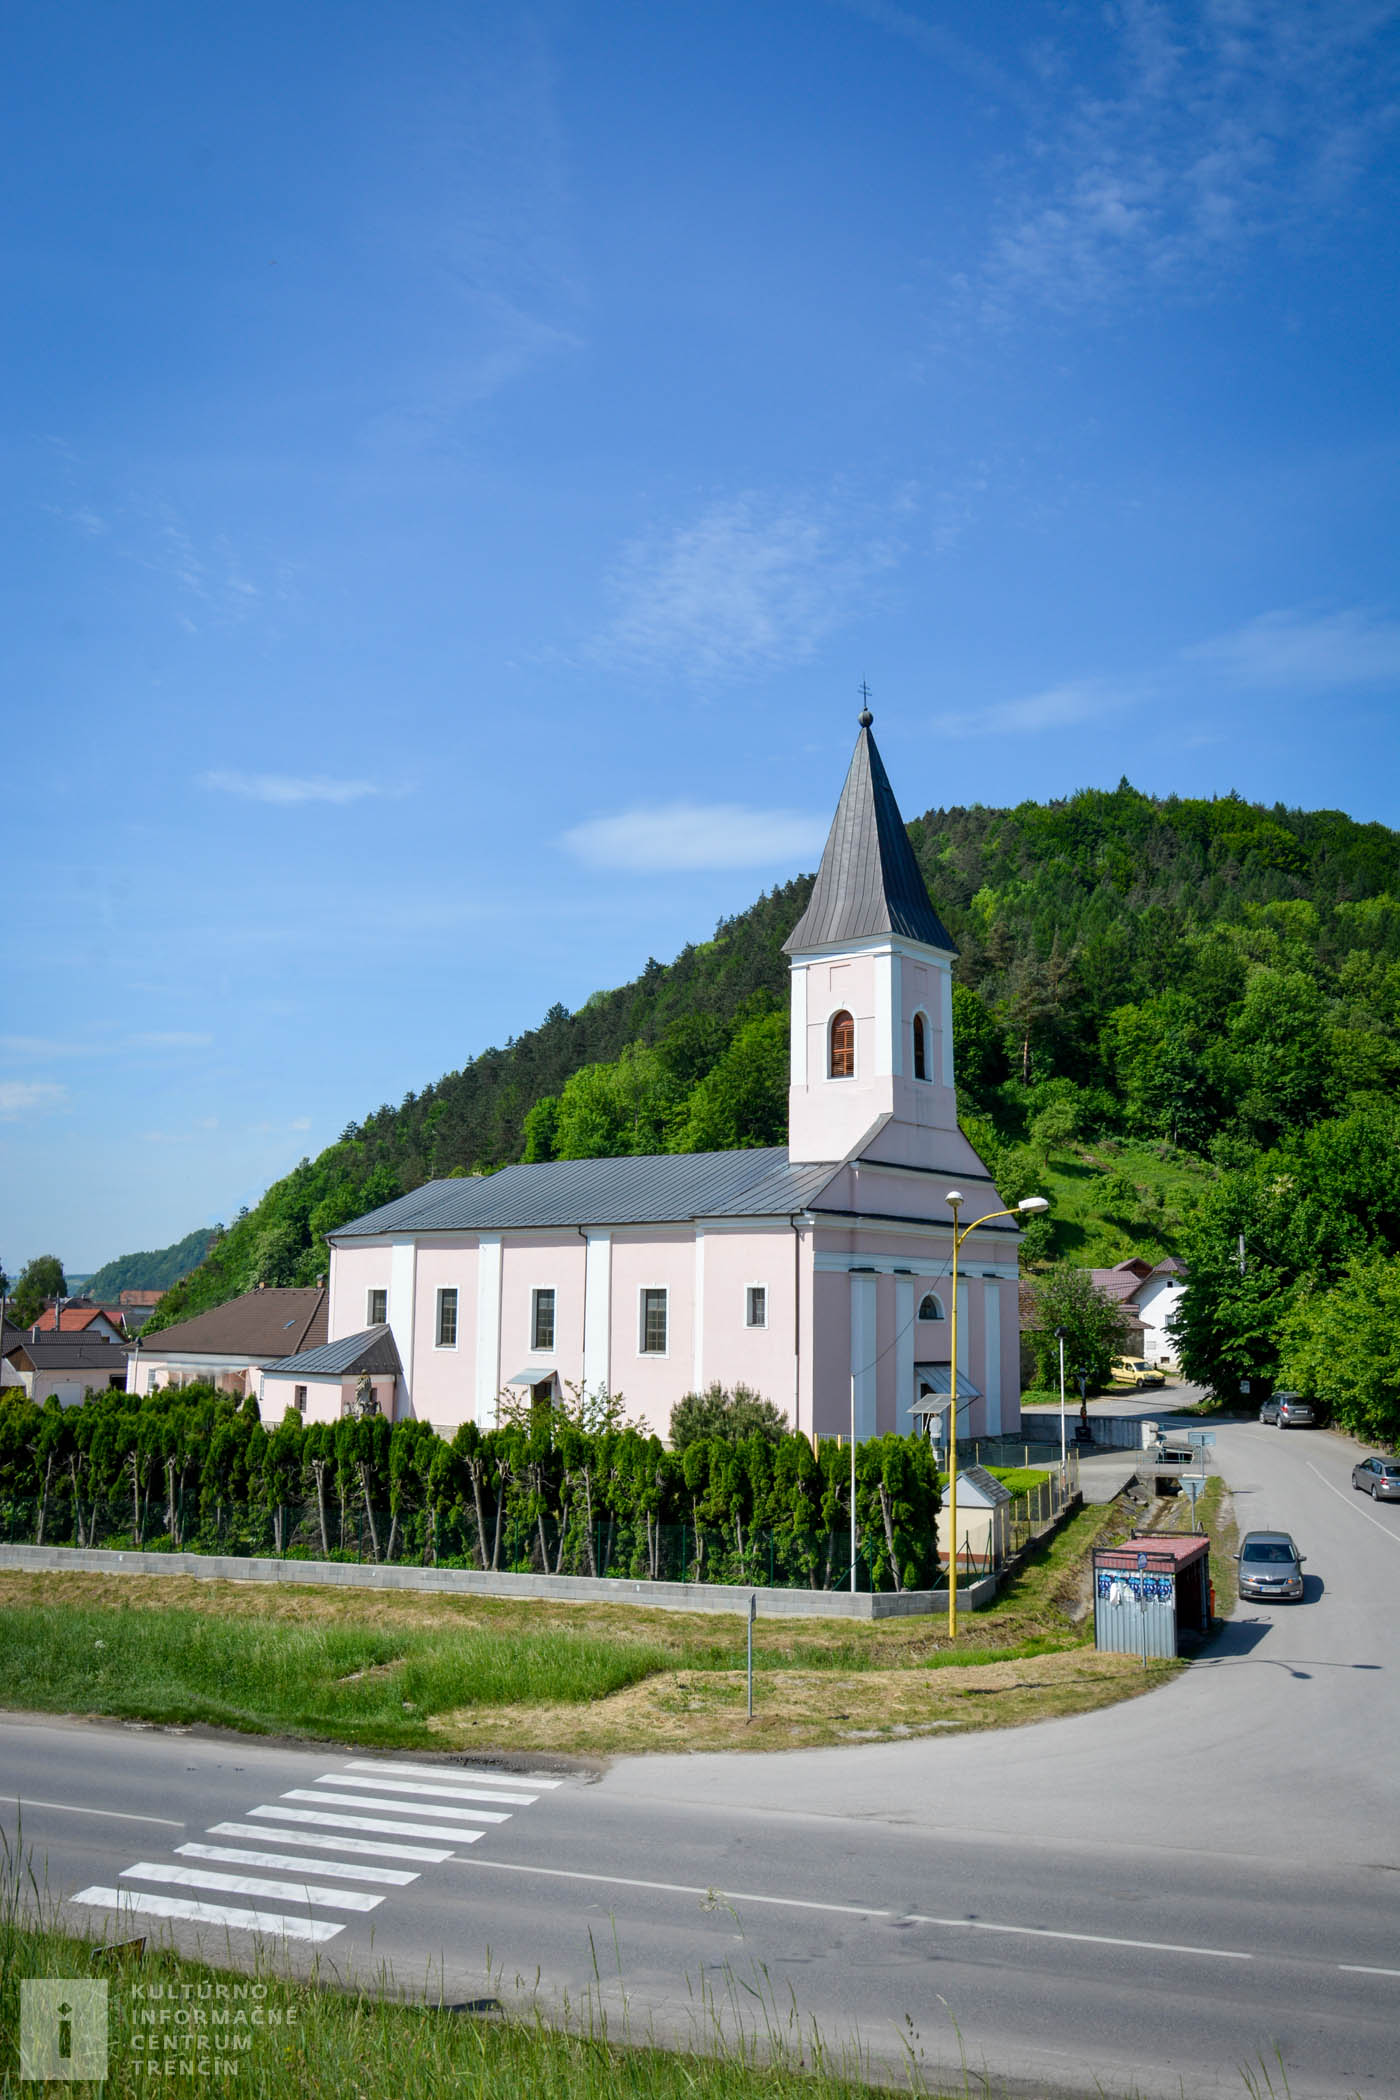 Kostol sv. Ladislava sa nachádza pod hradom v obci Považské Podhradie.